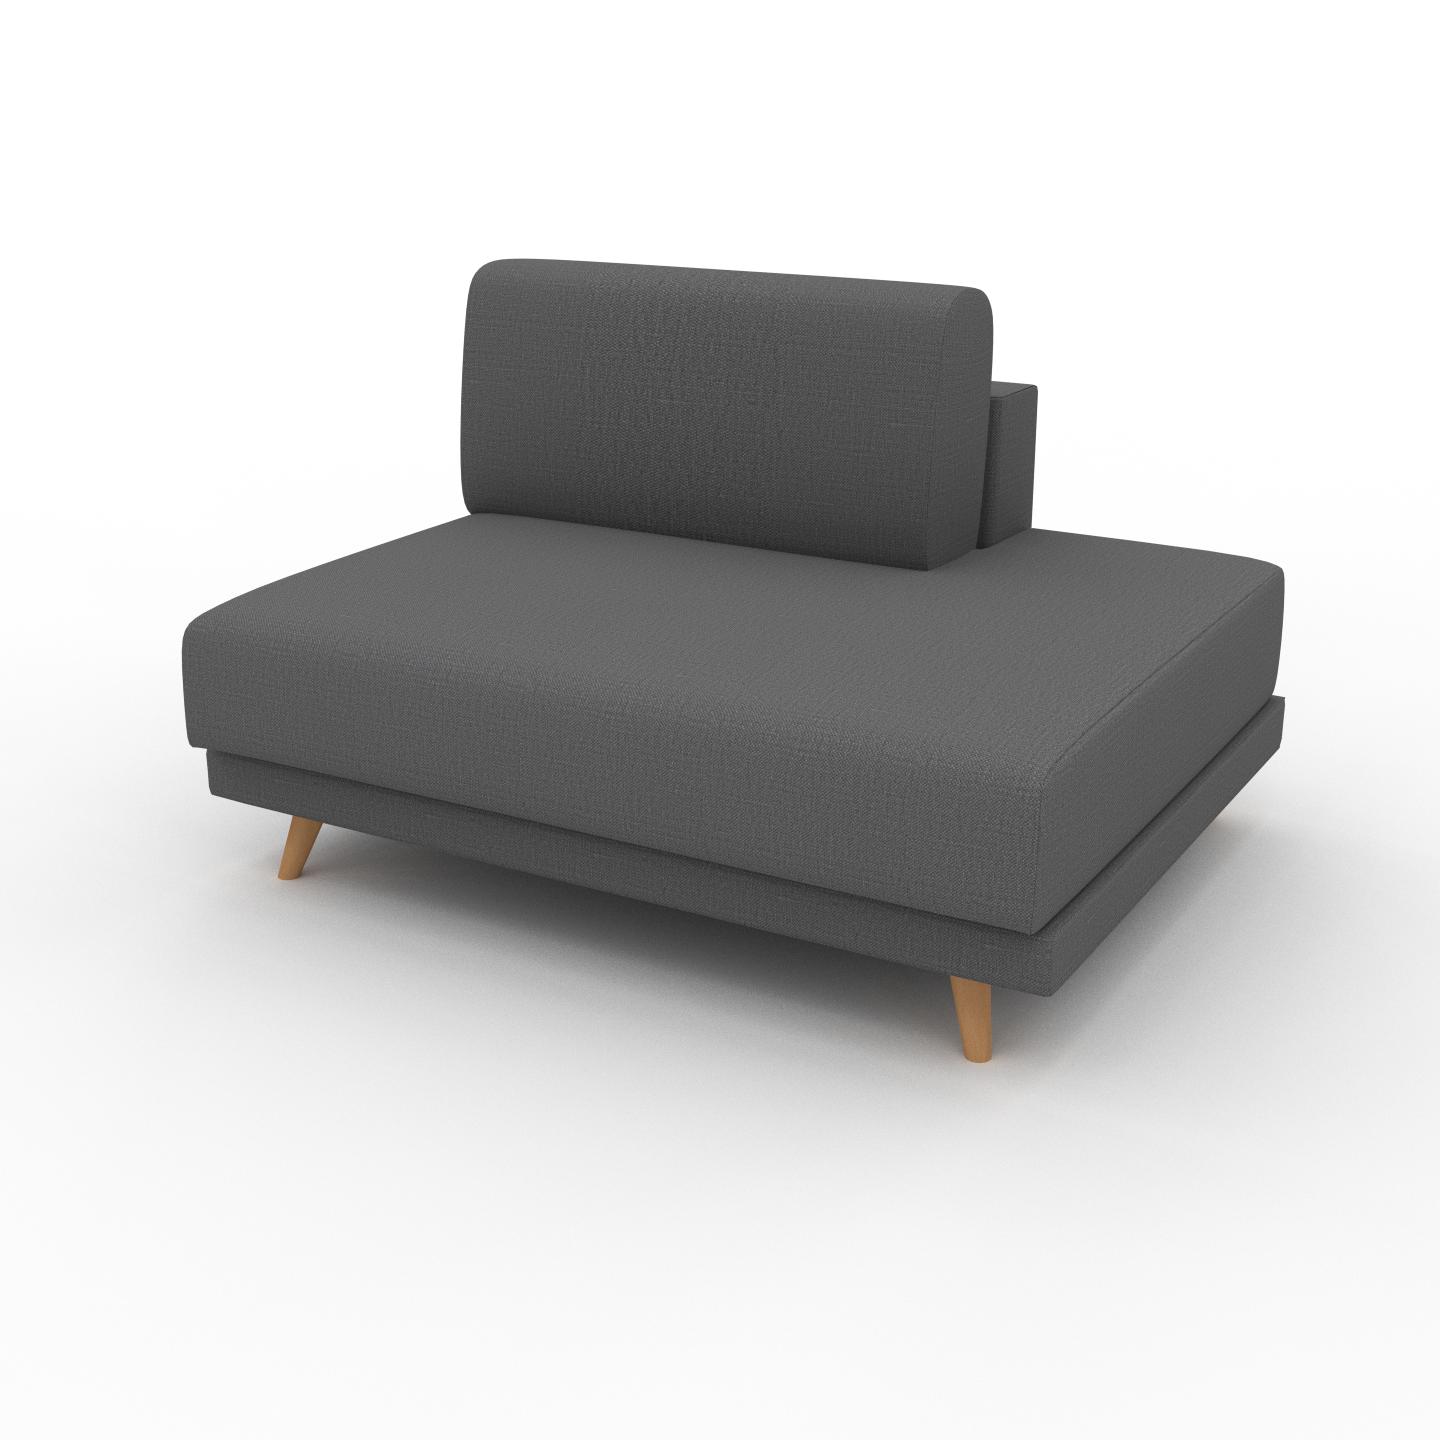 MYCS Sessel Steingrau - Eleganter Sessel: Hochwertige Qualität, einzigartiges Design - 120 x 75 x 98 cm, Individuell konfigurierbar